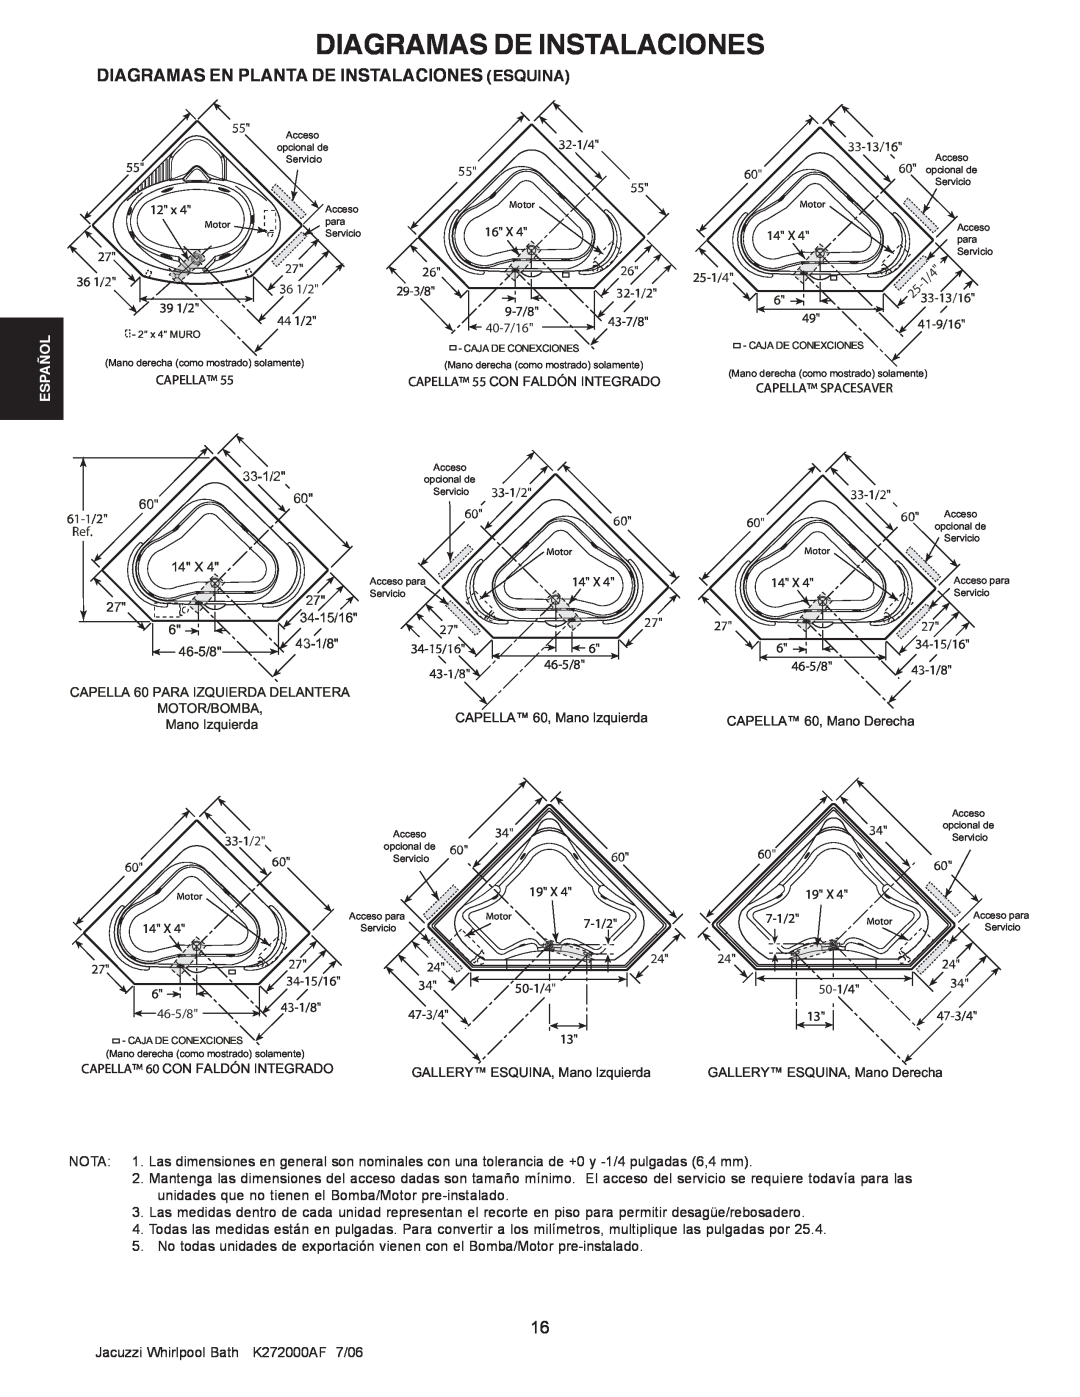 Jacuzzi K272000AF 7/06 manual Diagramas De Instalaciones, Diagramas En Planta De Instalaciones Esquina, Español, Capella 